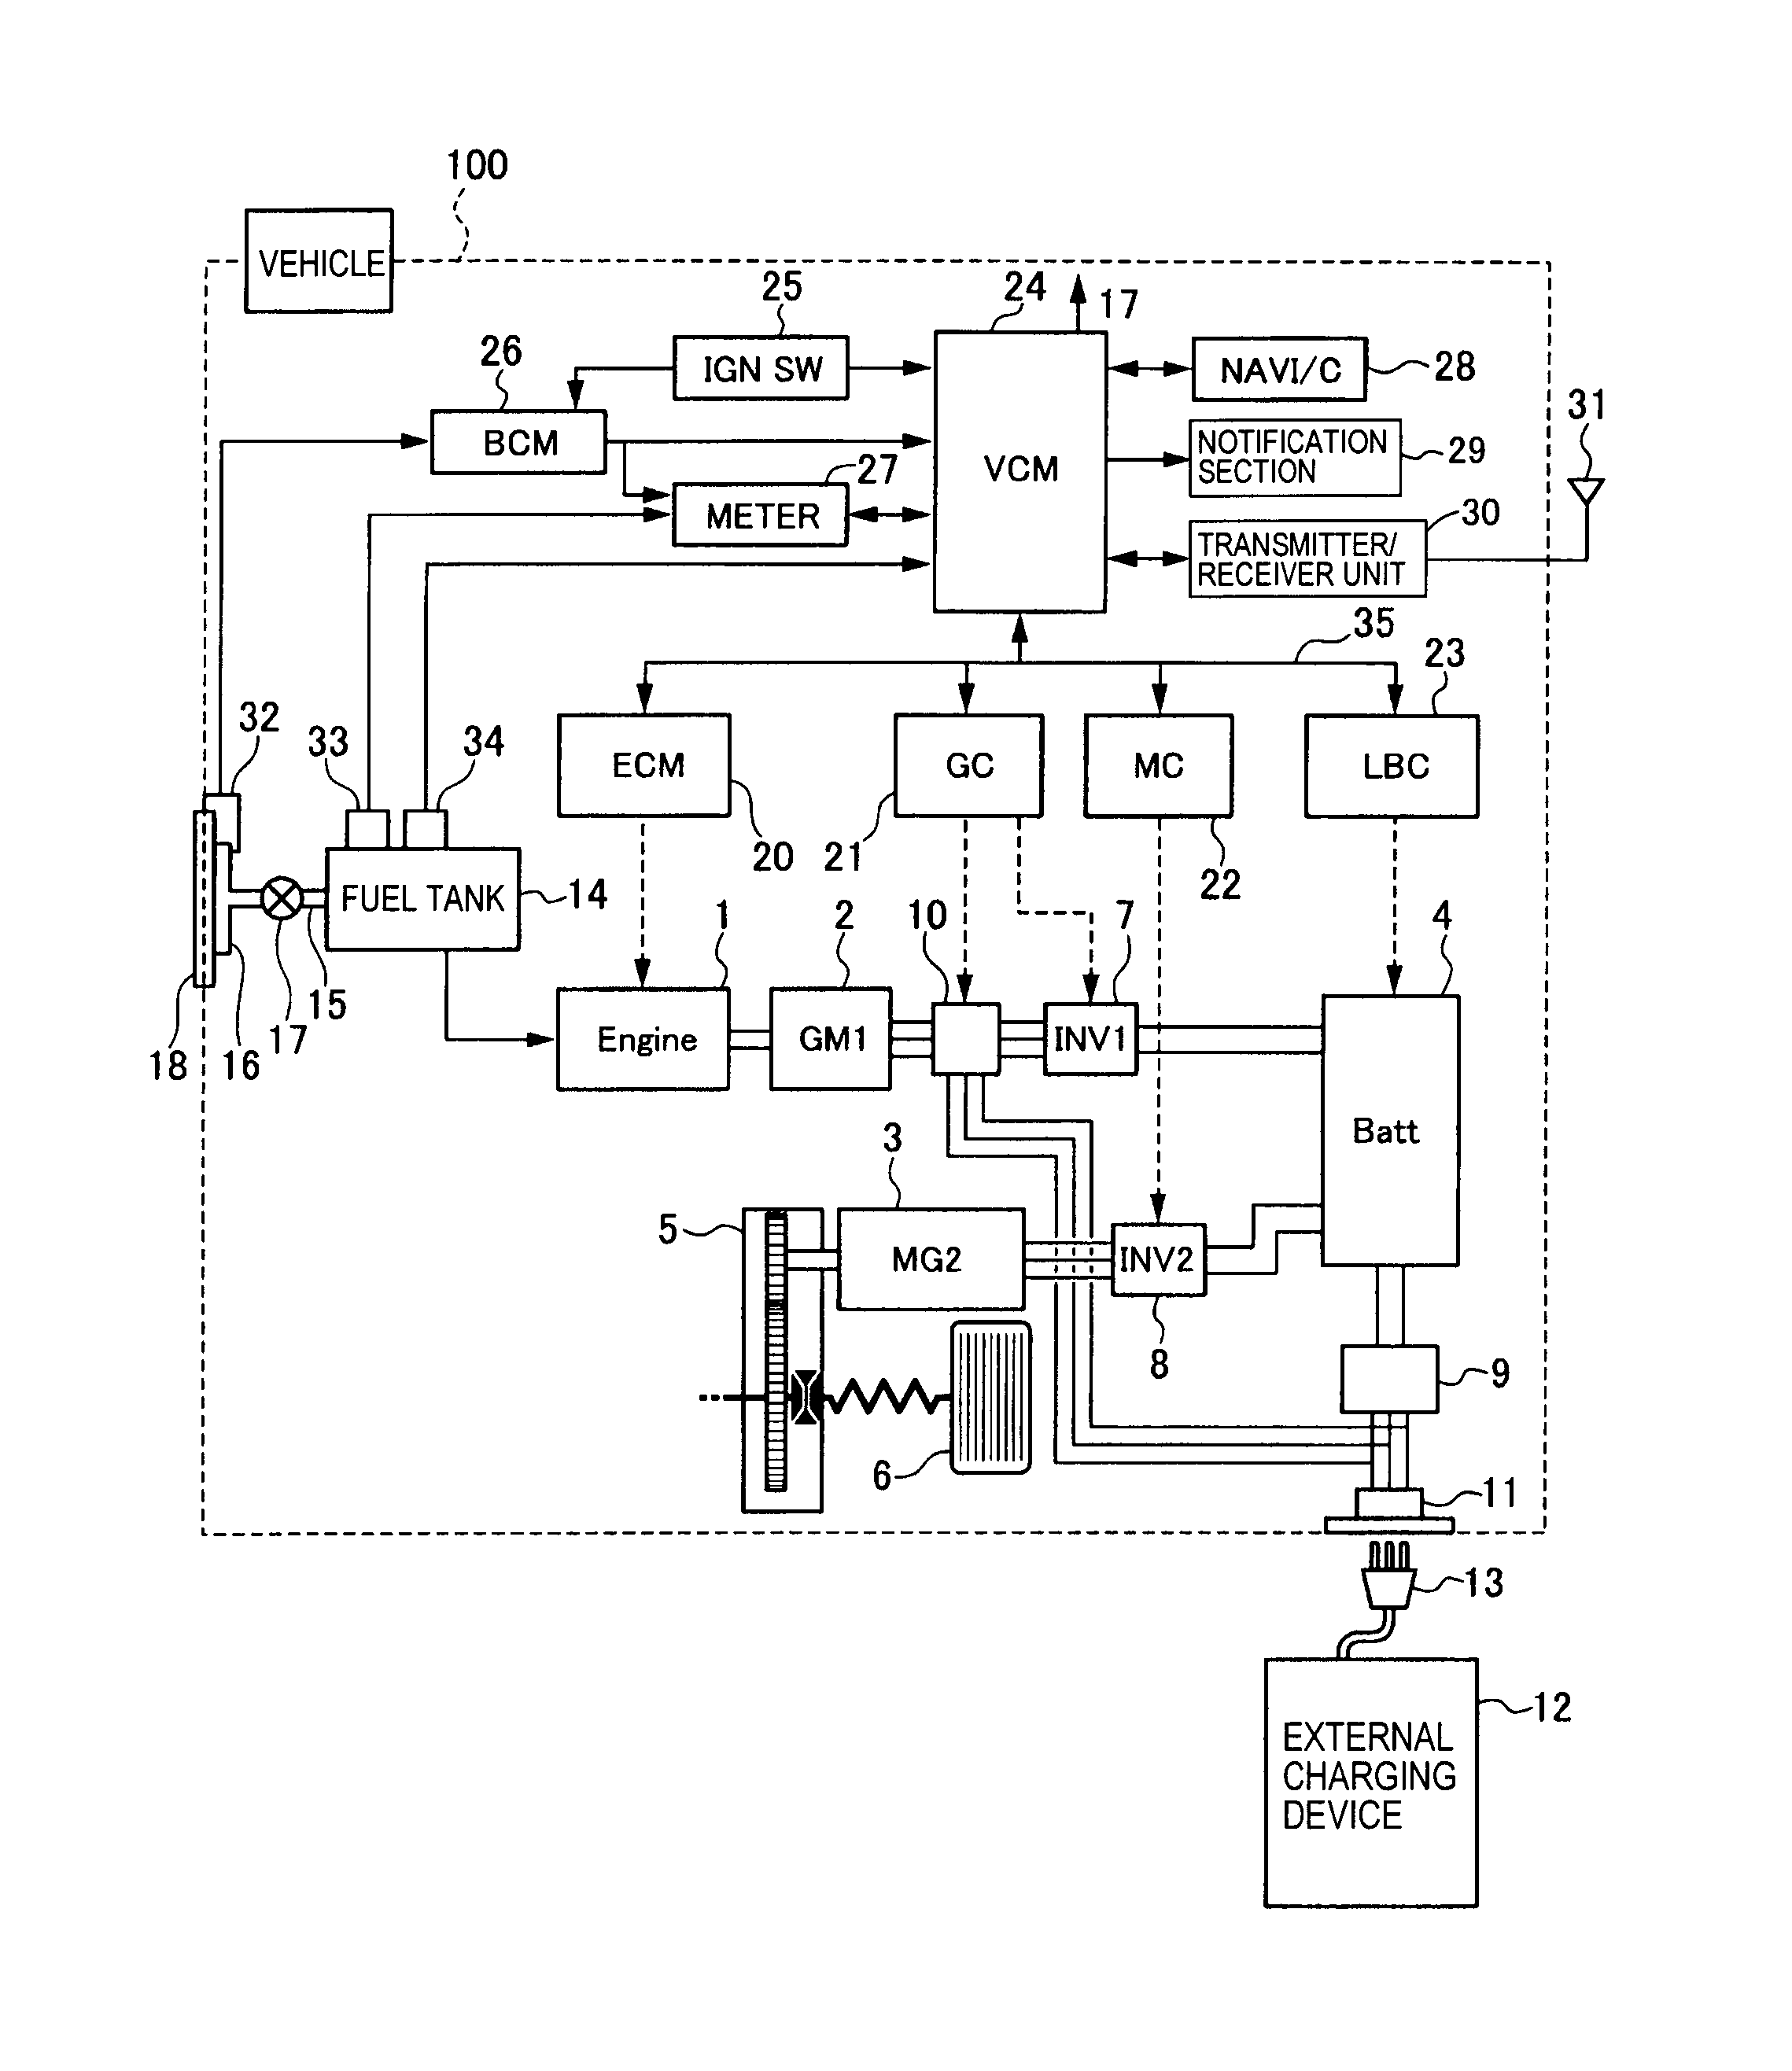 stihl ms210 parts diagram